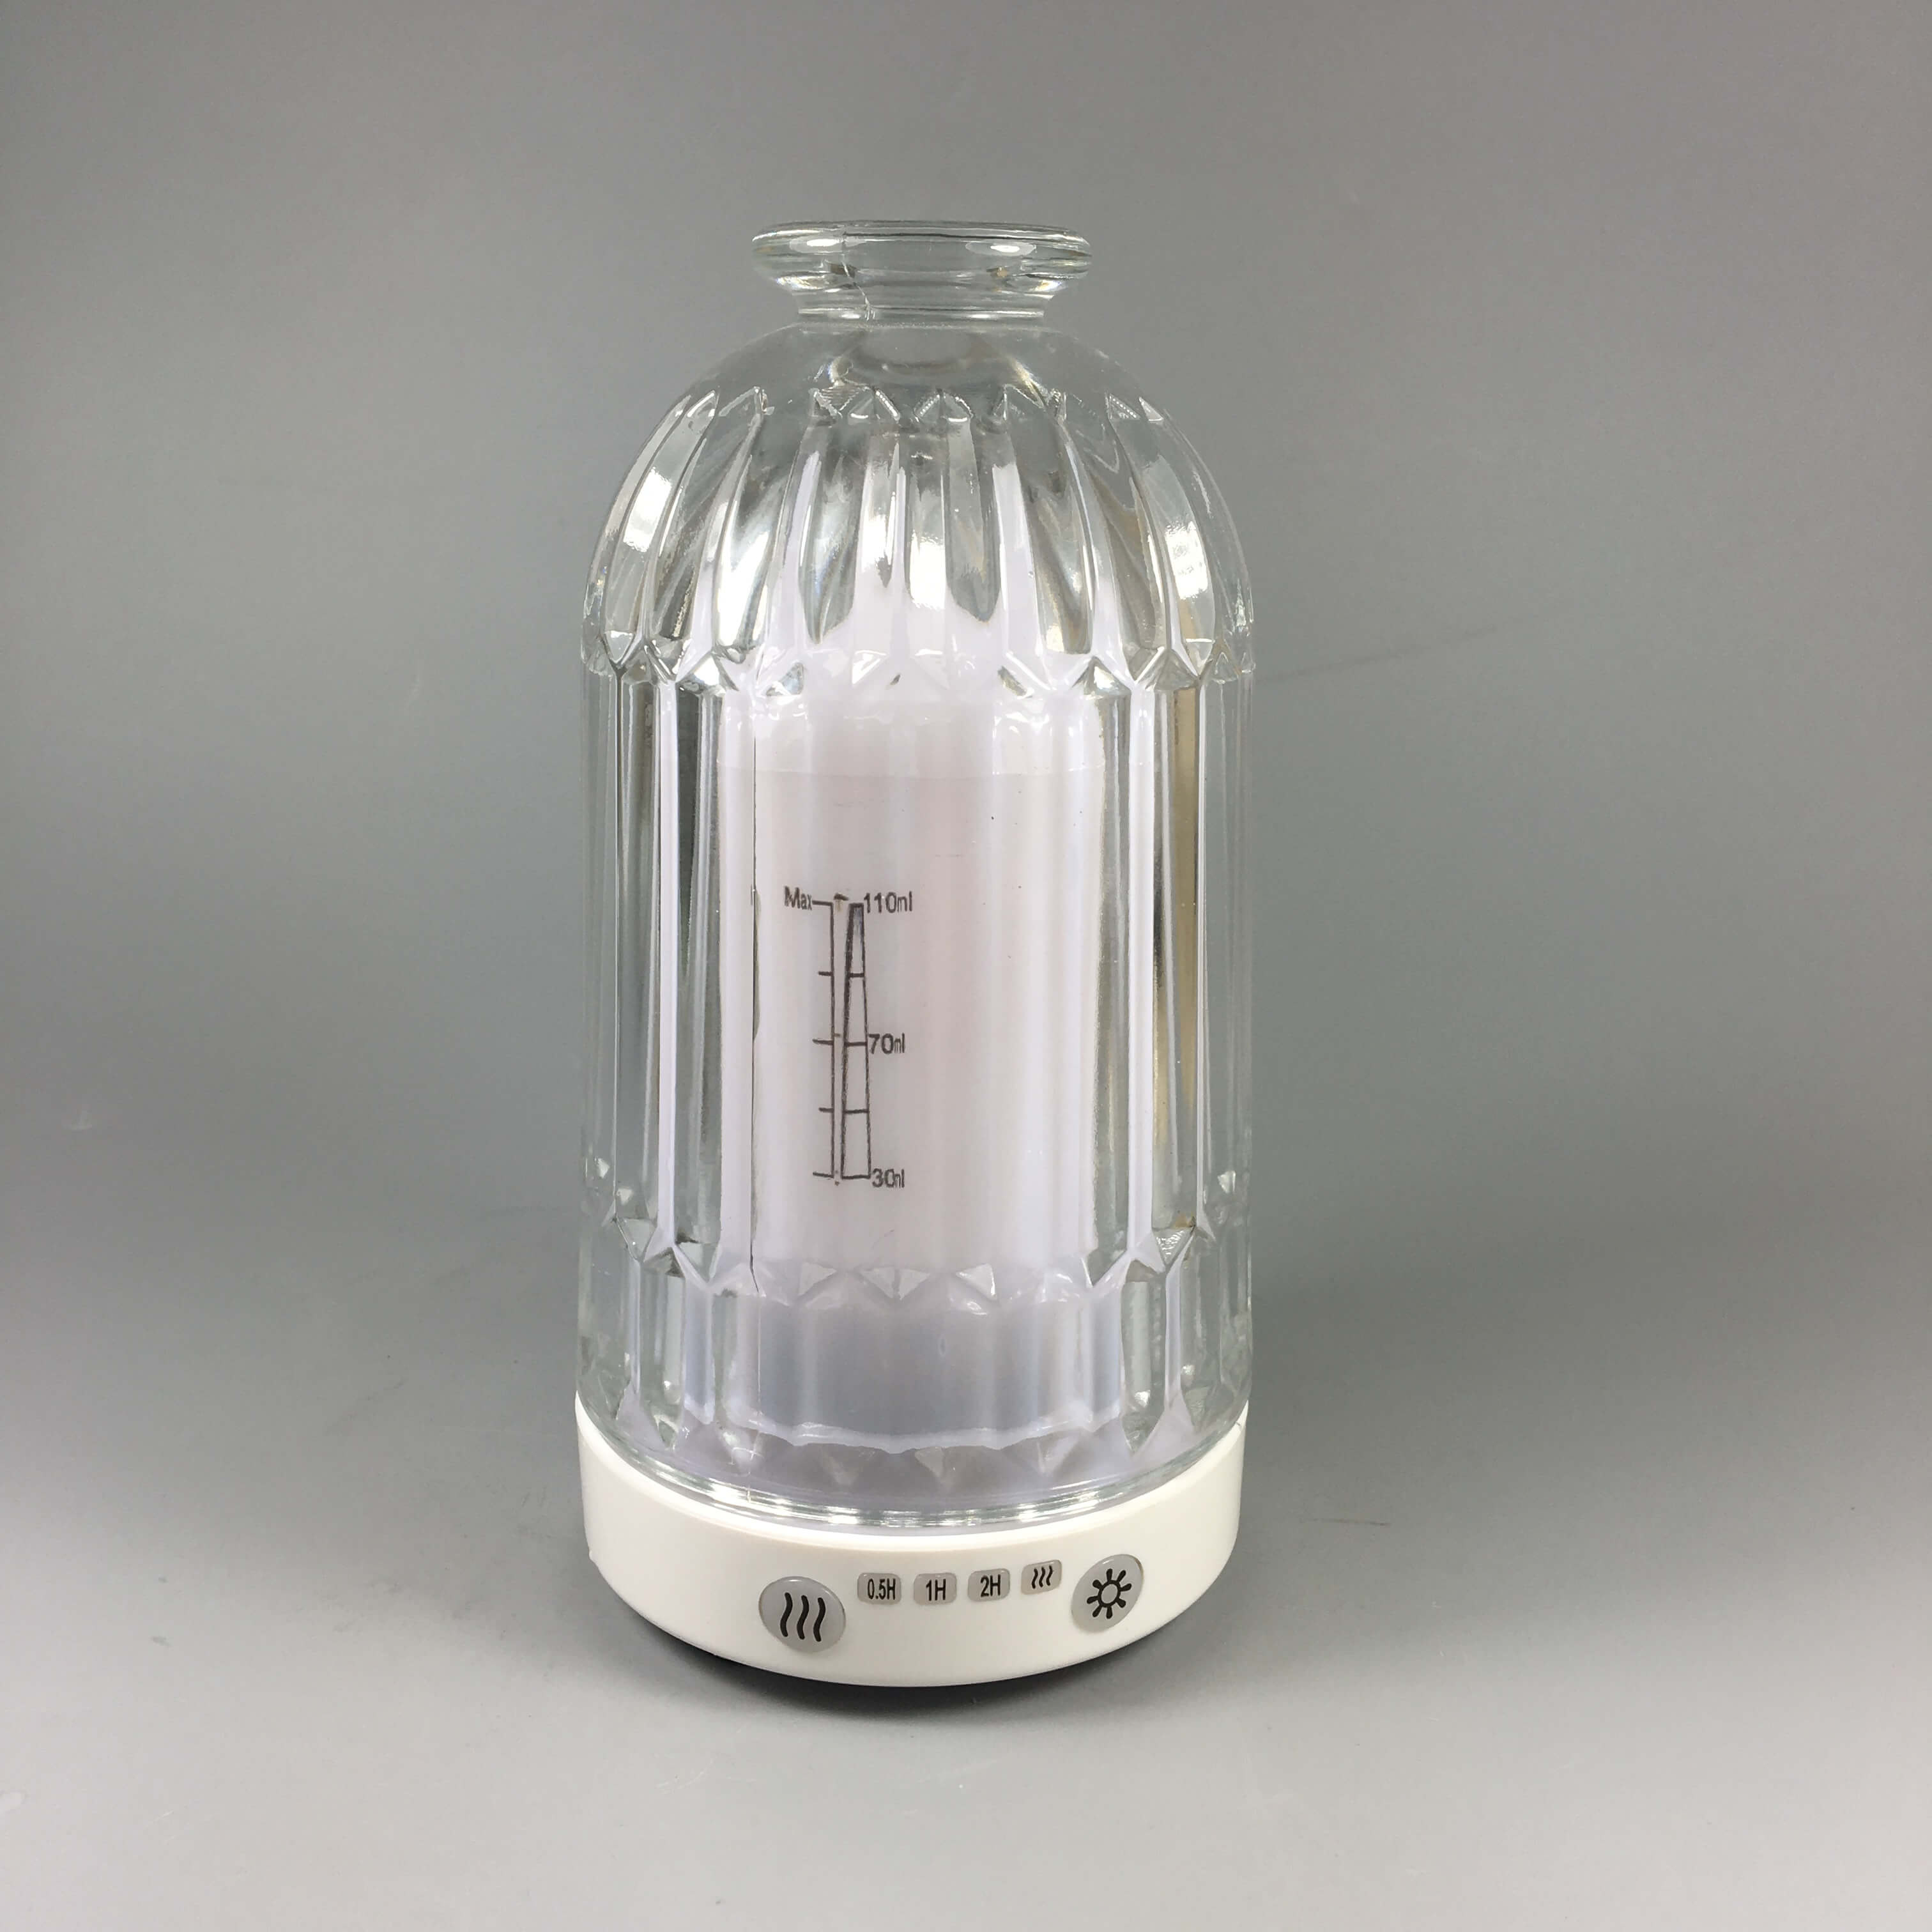 Hot glass aroma diffuser-GEA180944